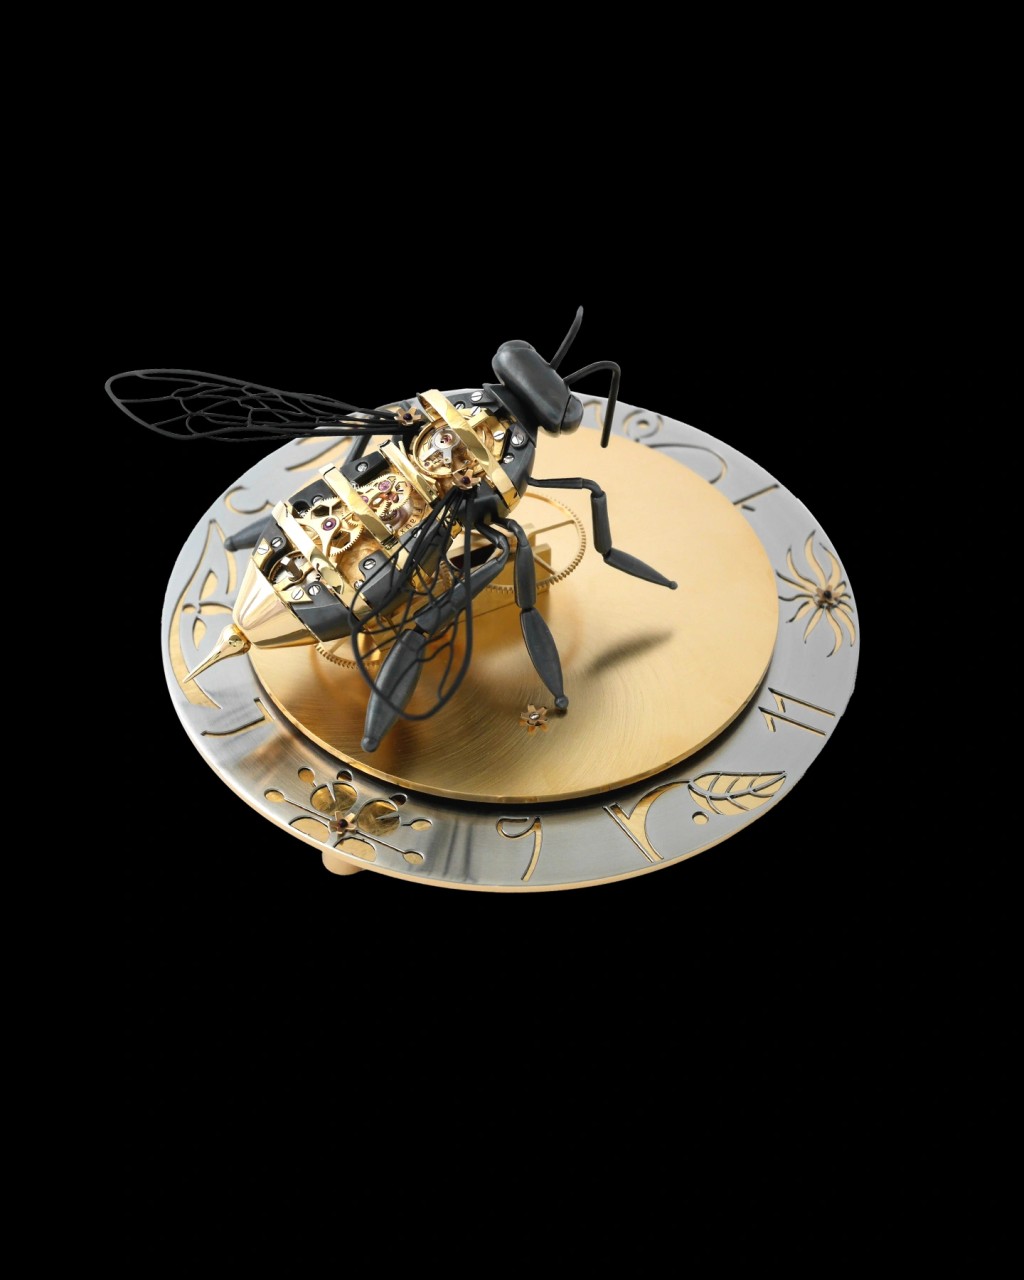 参赛装置是一款蜜蜂模样且带有卡罗素的手上链机芯。